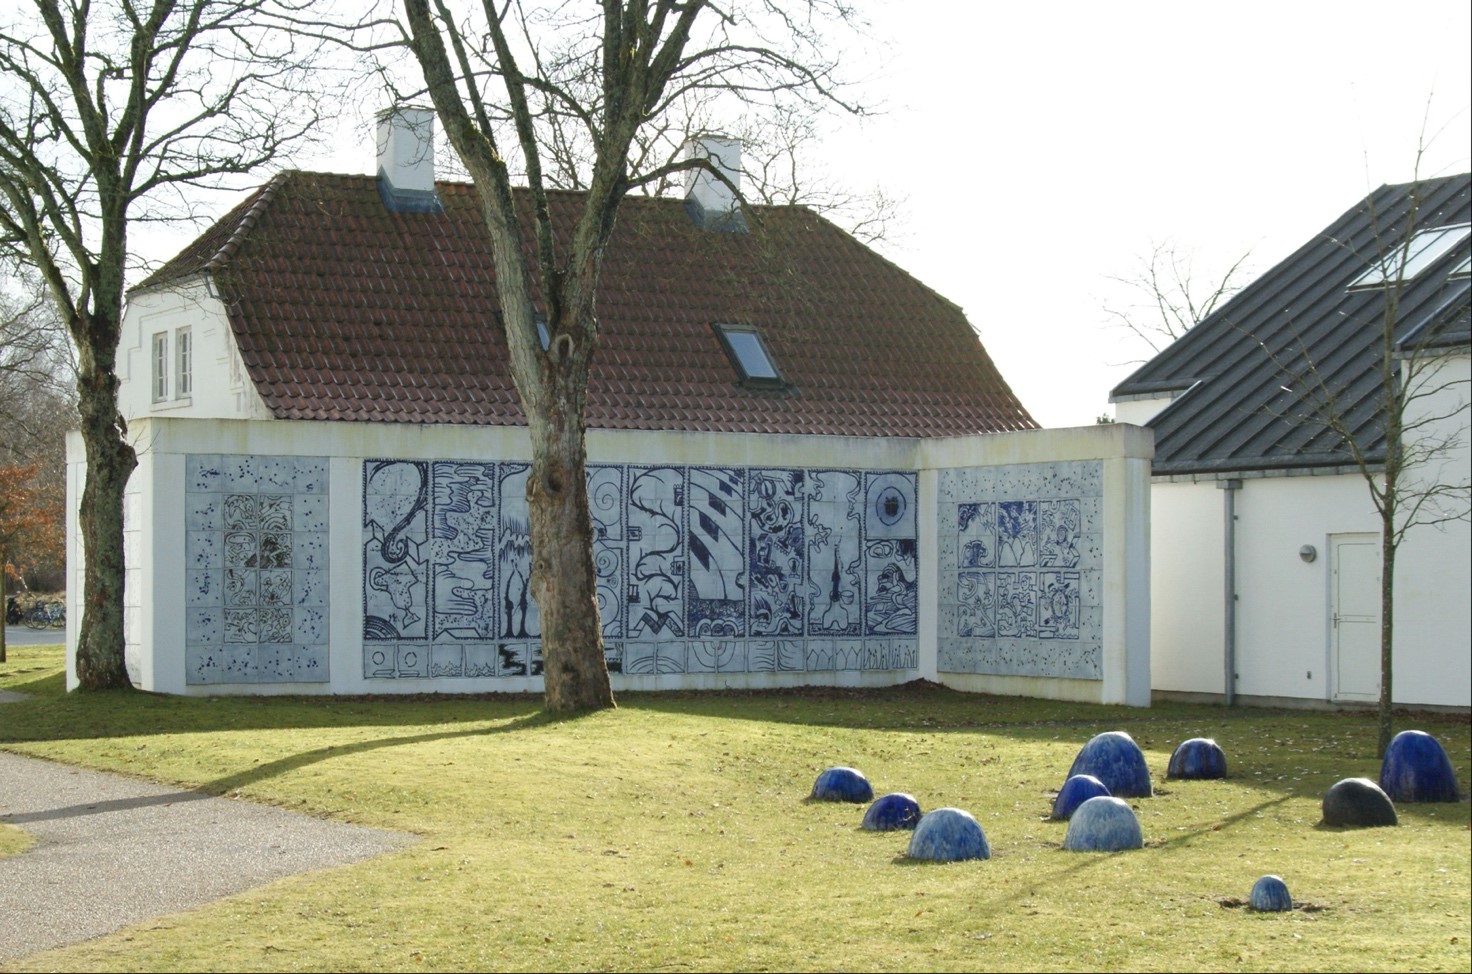 “Museum Jorn – Silkeborg Art Museum – The Asger Jorn Collection” af Jens Cederskjold, licenseret under CC BY 3.0. Museum Jorn i Silkeborg er opkaldt efter den anerkendte kunstner, der hen over de sidste 20 år af sit liv donerede omkring 5.500 kunstværket til Silkeborg Kunstmuseum